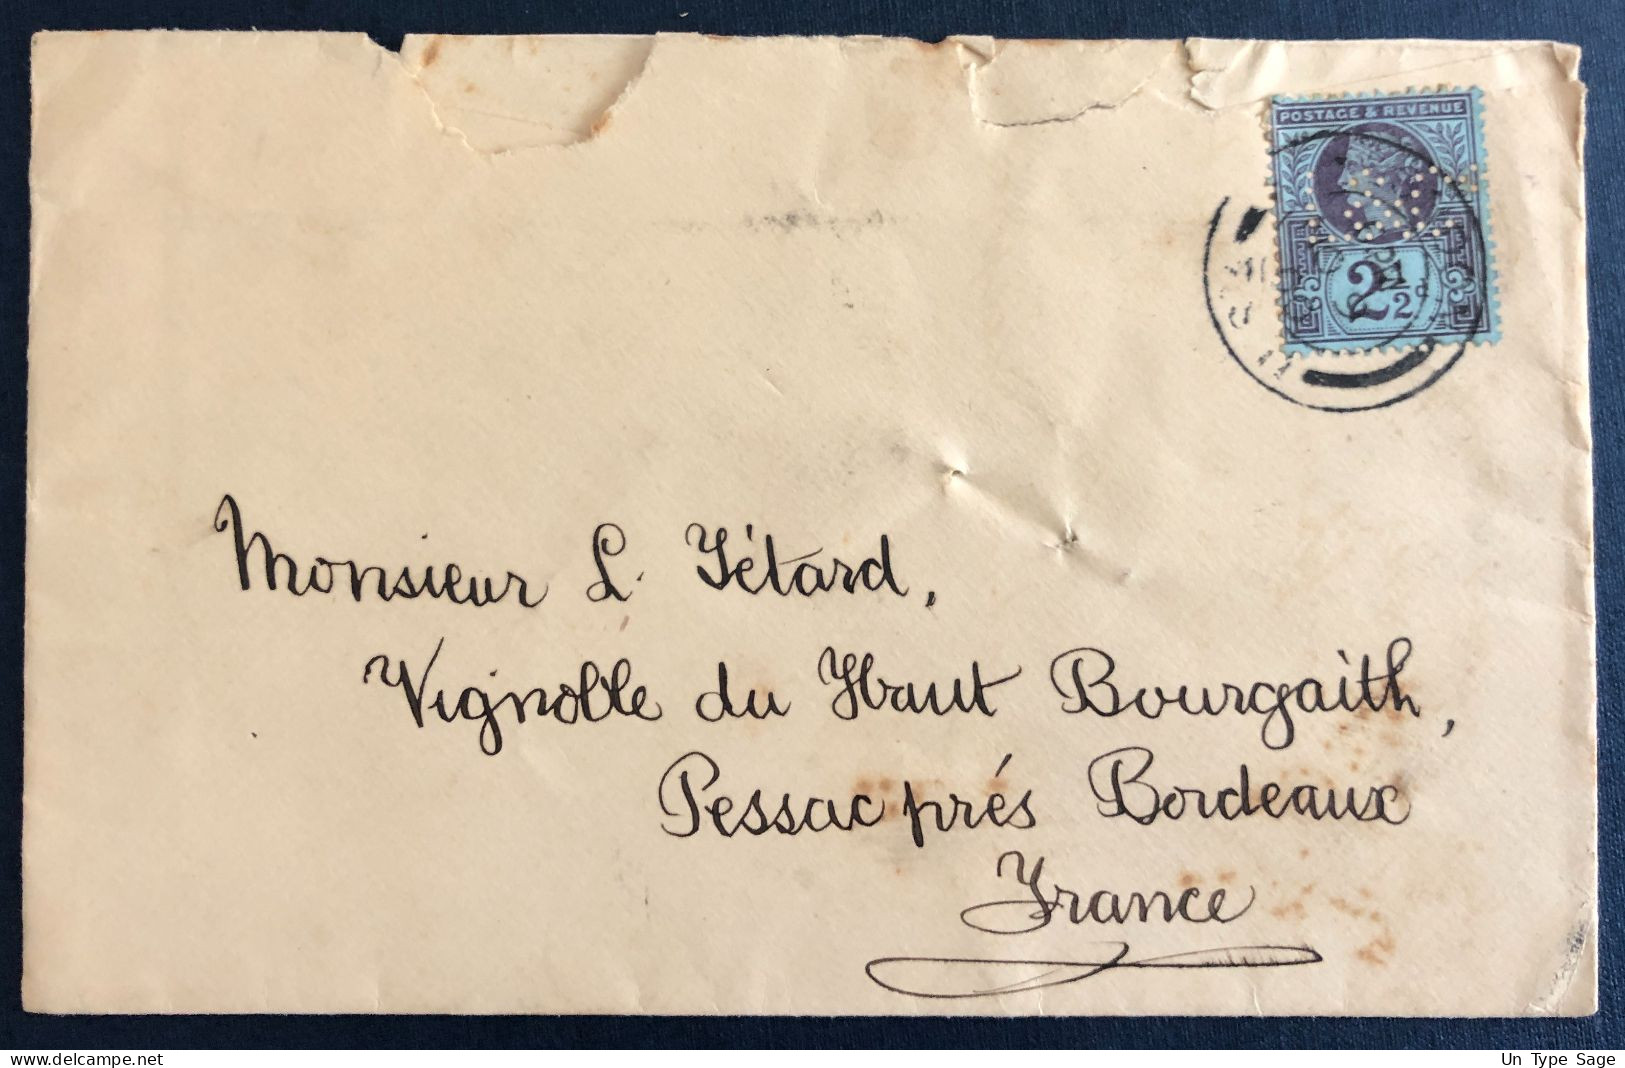 Grande-Bretagne - Divers, Perforé Sur Enveloppe 1900, Pour Bordeaux - (N130) - Storia Postale